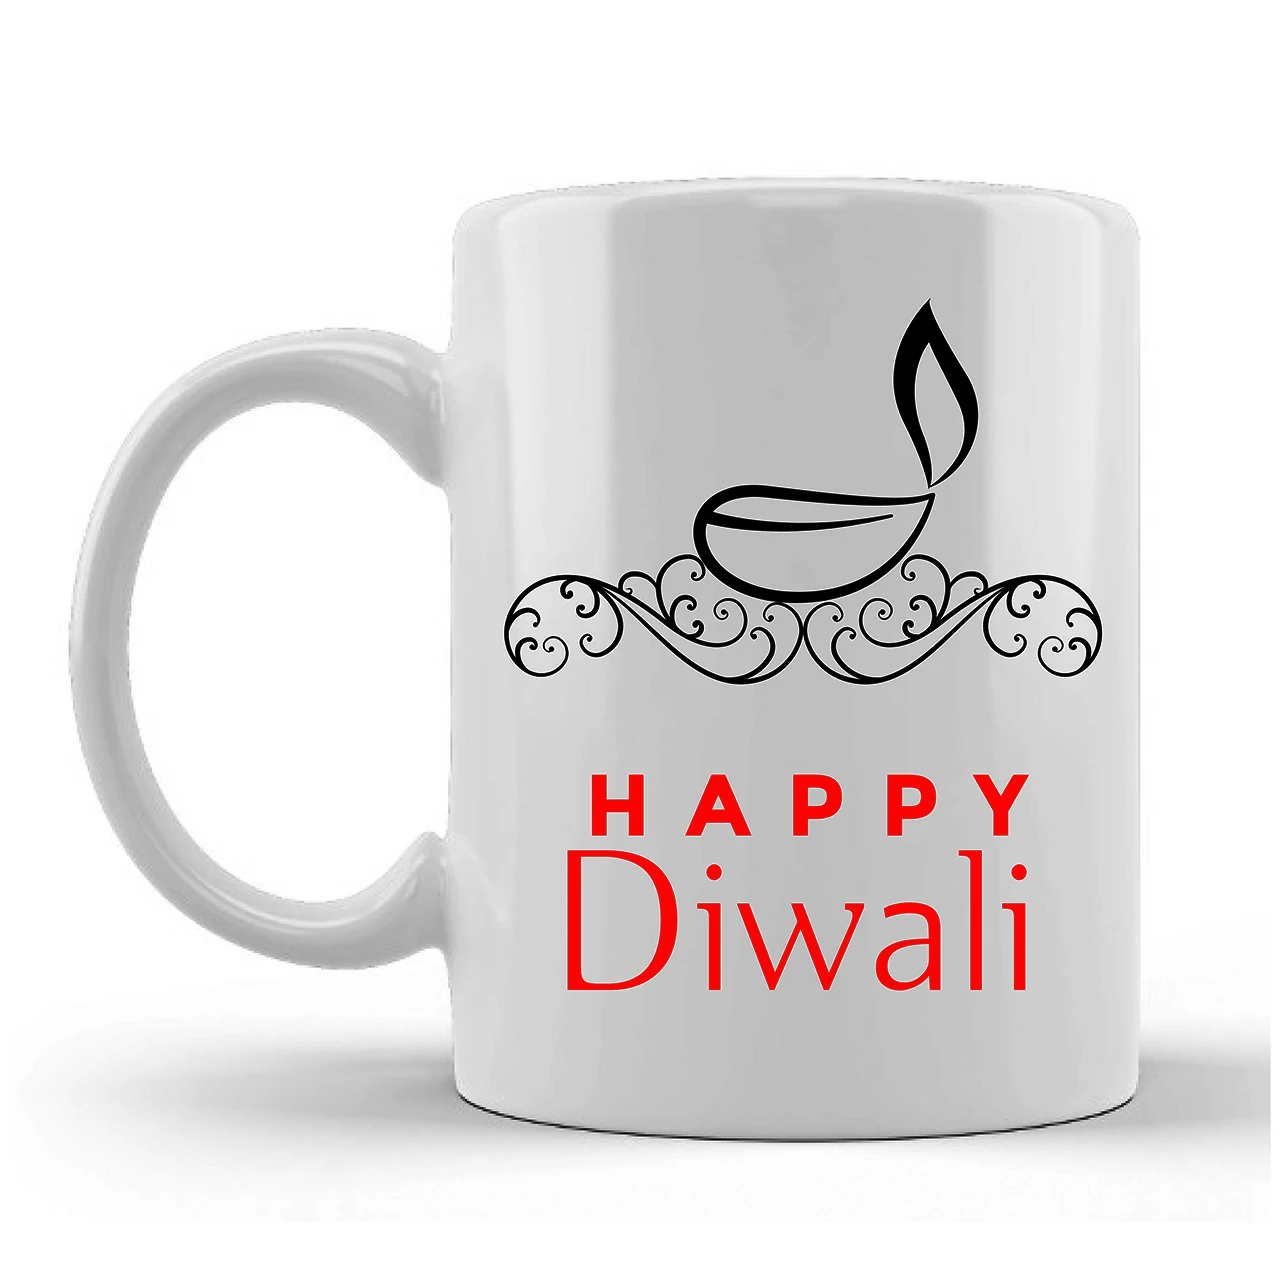 Happy Diwali Printed Ceramic Mug Gifts for Diwali Gifts Diwali Gift Items Diwali Gifts for Friends Diwali Gifts for Friends and Family Gifts for Diwali